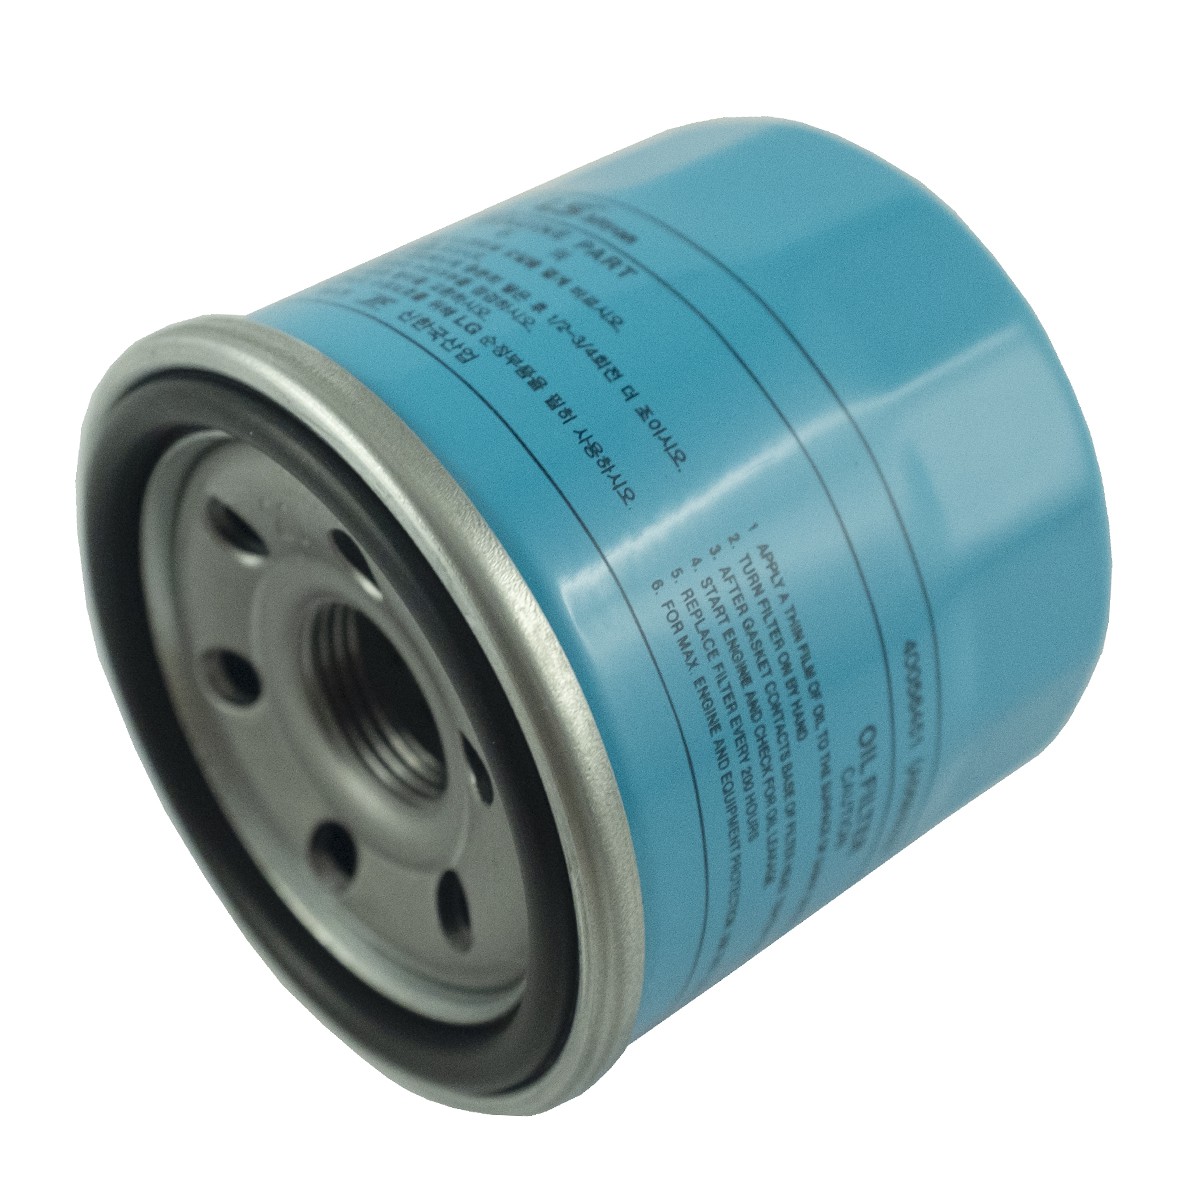 Engine oil filter LS XJ25 / M20 x 1.5 / A0653039 / 40056451